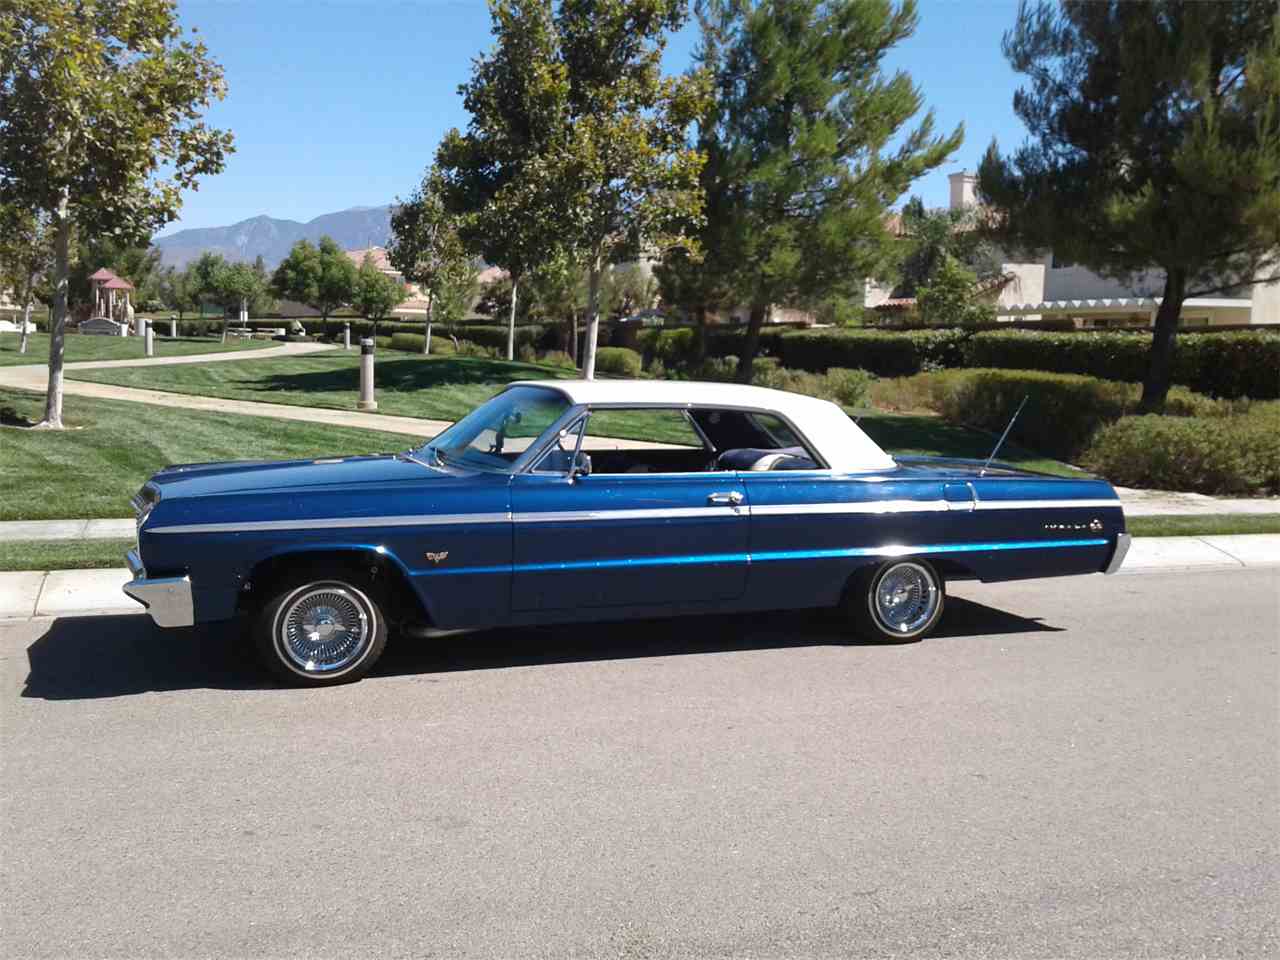 1964 Chevrolet Impala SS for Sale | ClassicCars.com | CC-902931